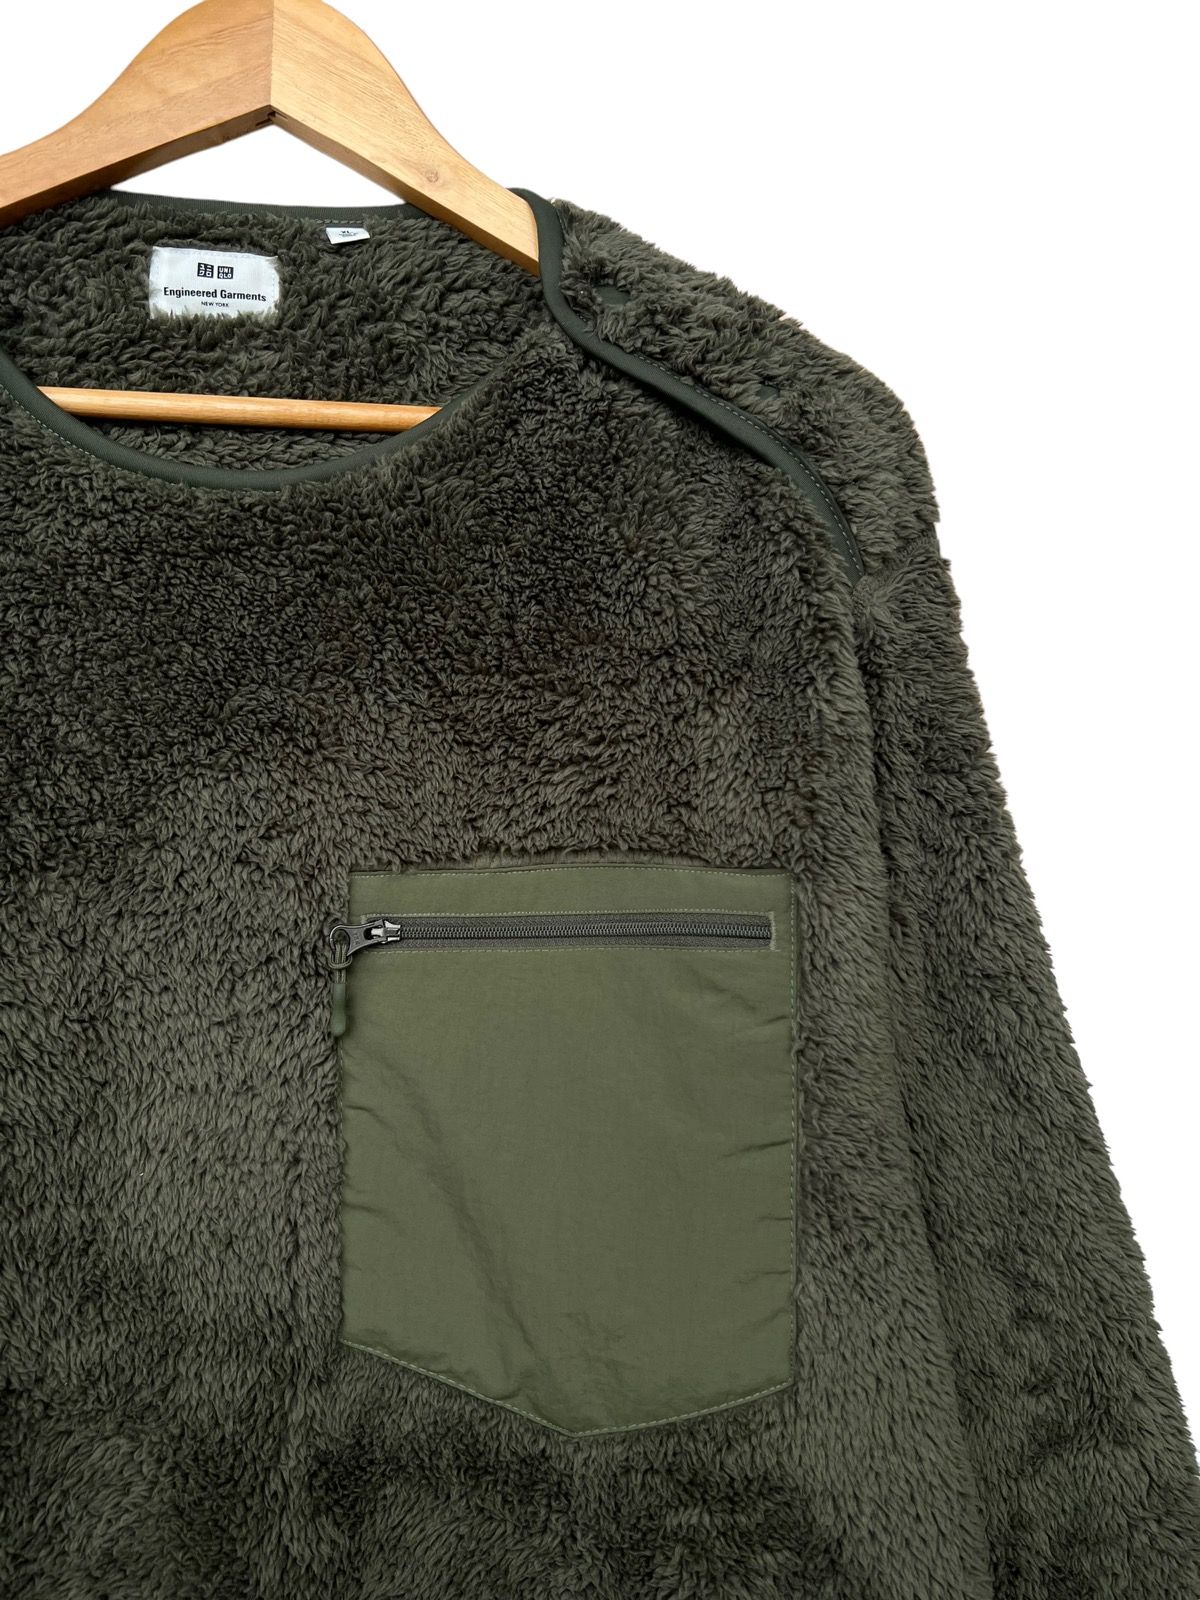 Engineered Garment Uniqlo Fleece Sweater - 8